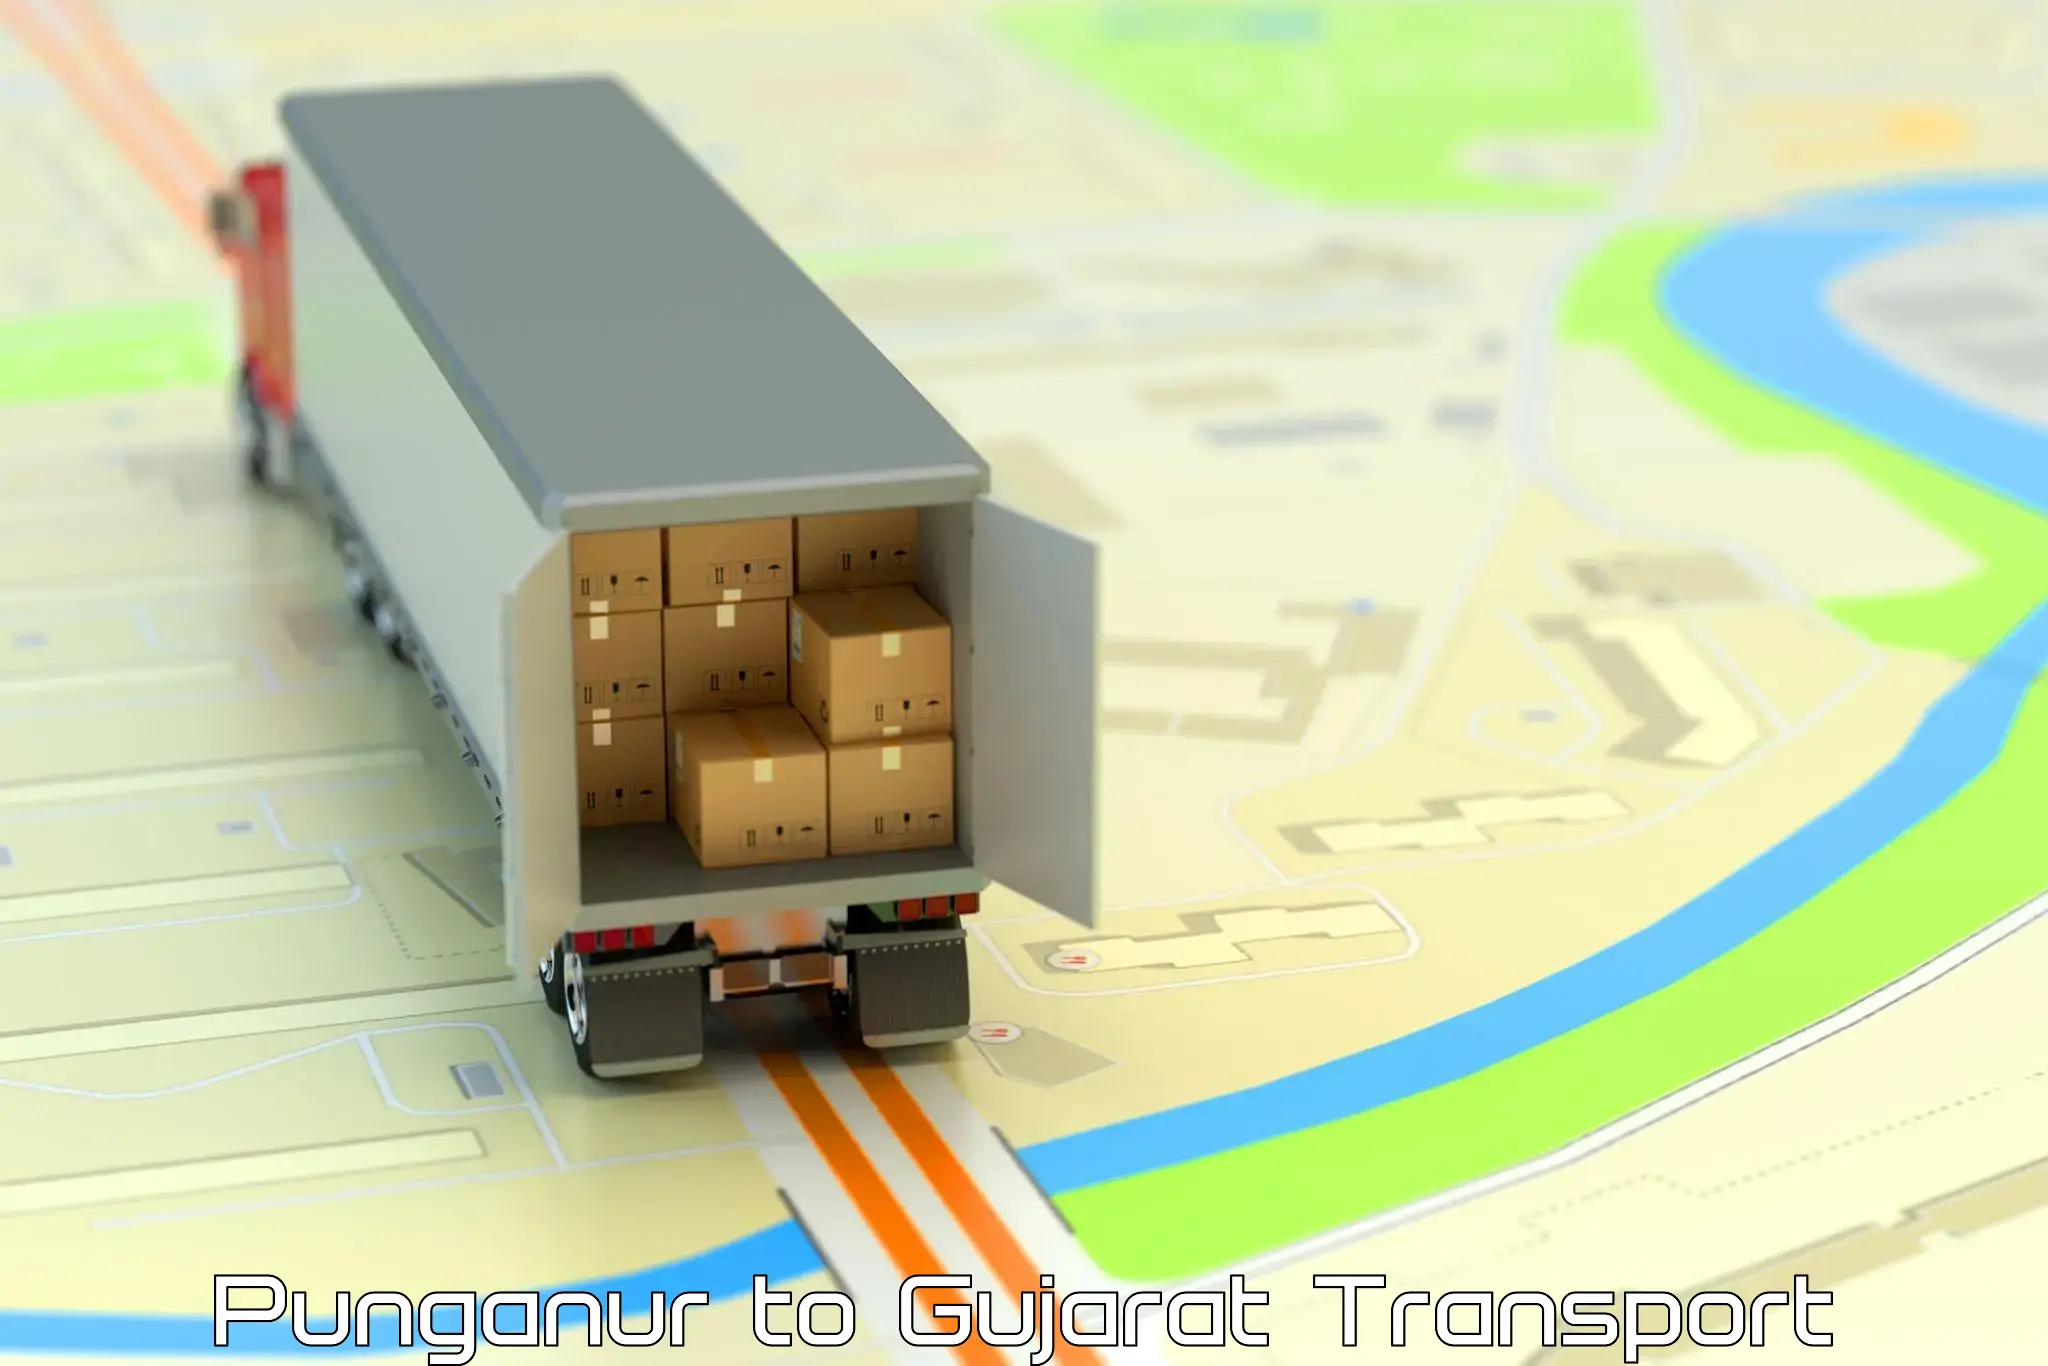 Container transport service Punganur to Ambaji